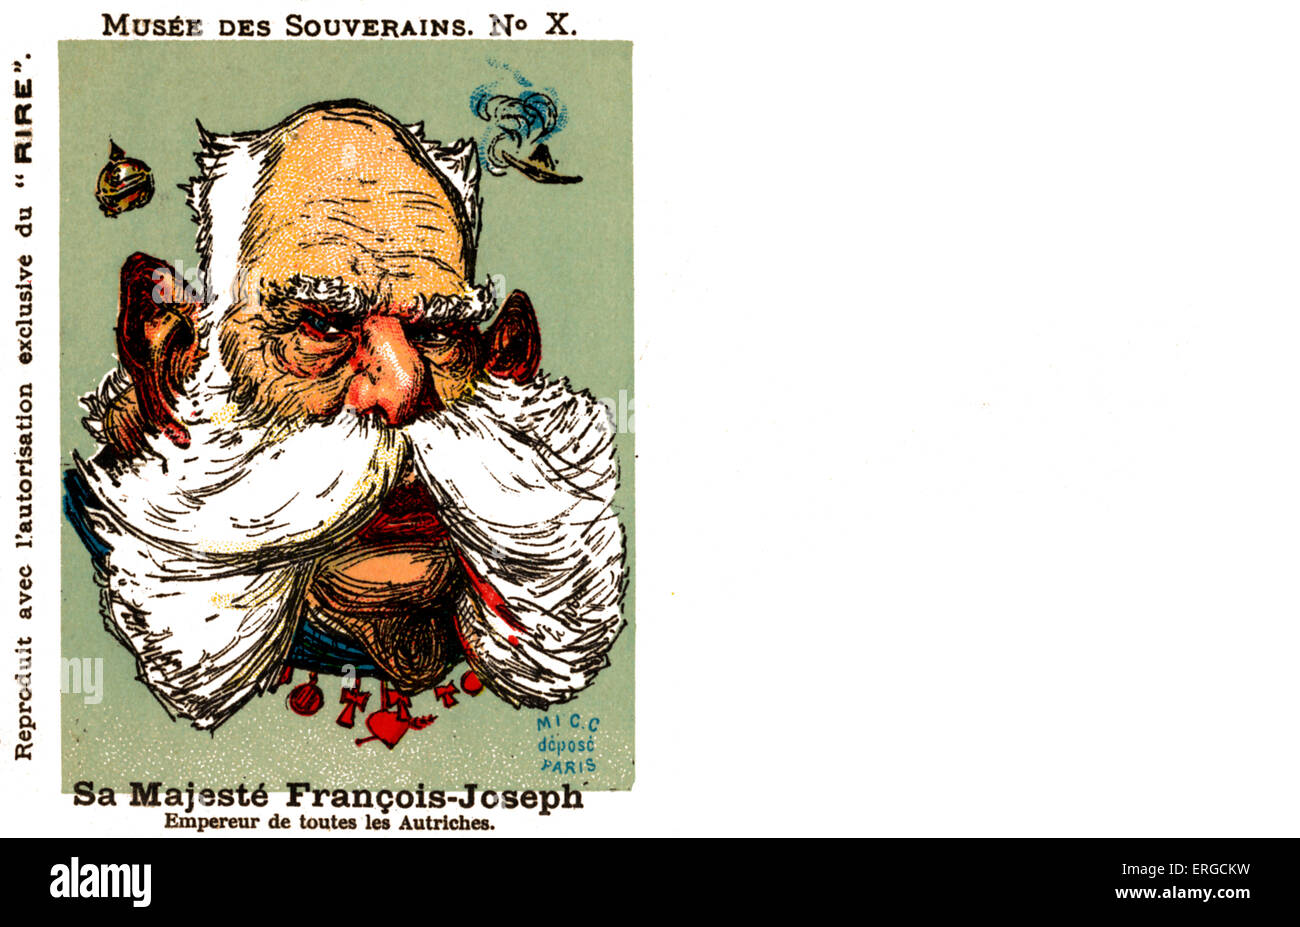 Franz Joseph I - Karikatur. Kaiser von Österreich, 1848-1916: 18. August 1830 – 21. November 1916. Nr. 10 in der Serie "Musée des Souverains". Stockfoto